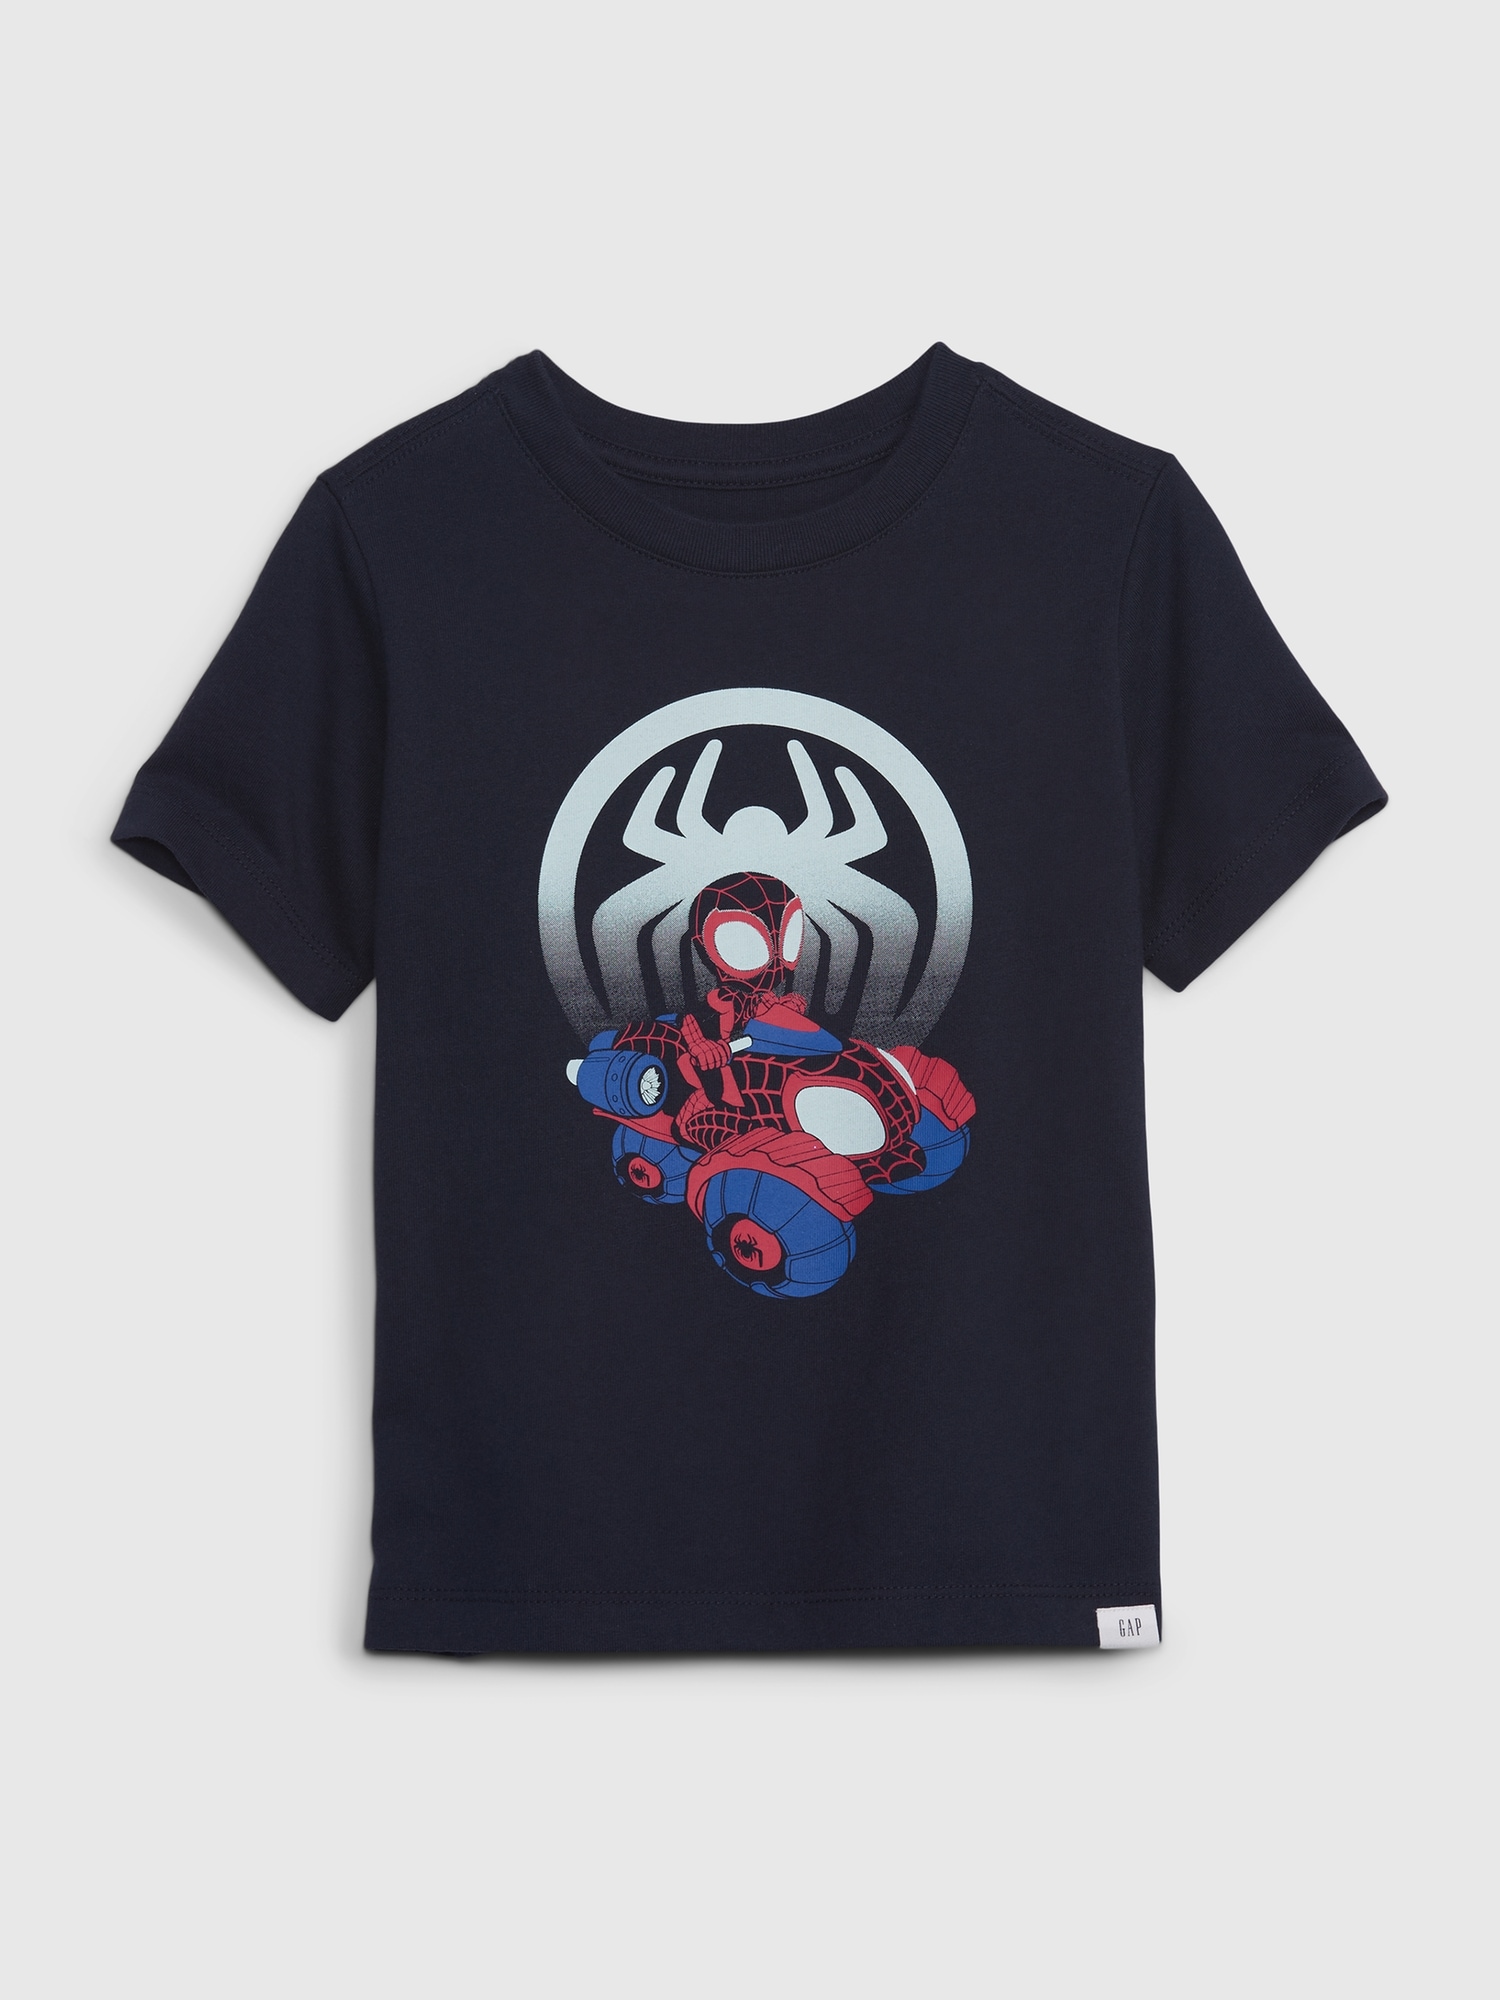 激安な スパイダーマンTシャツ 110